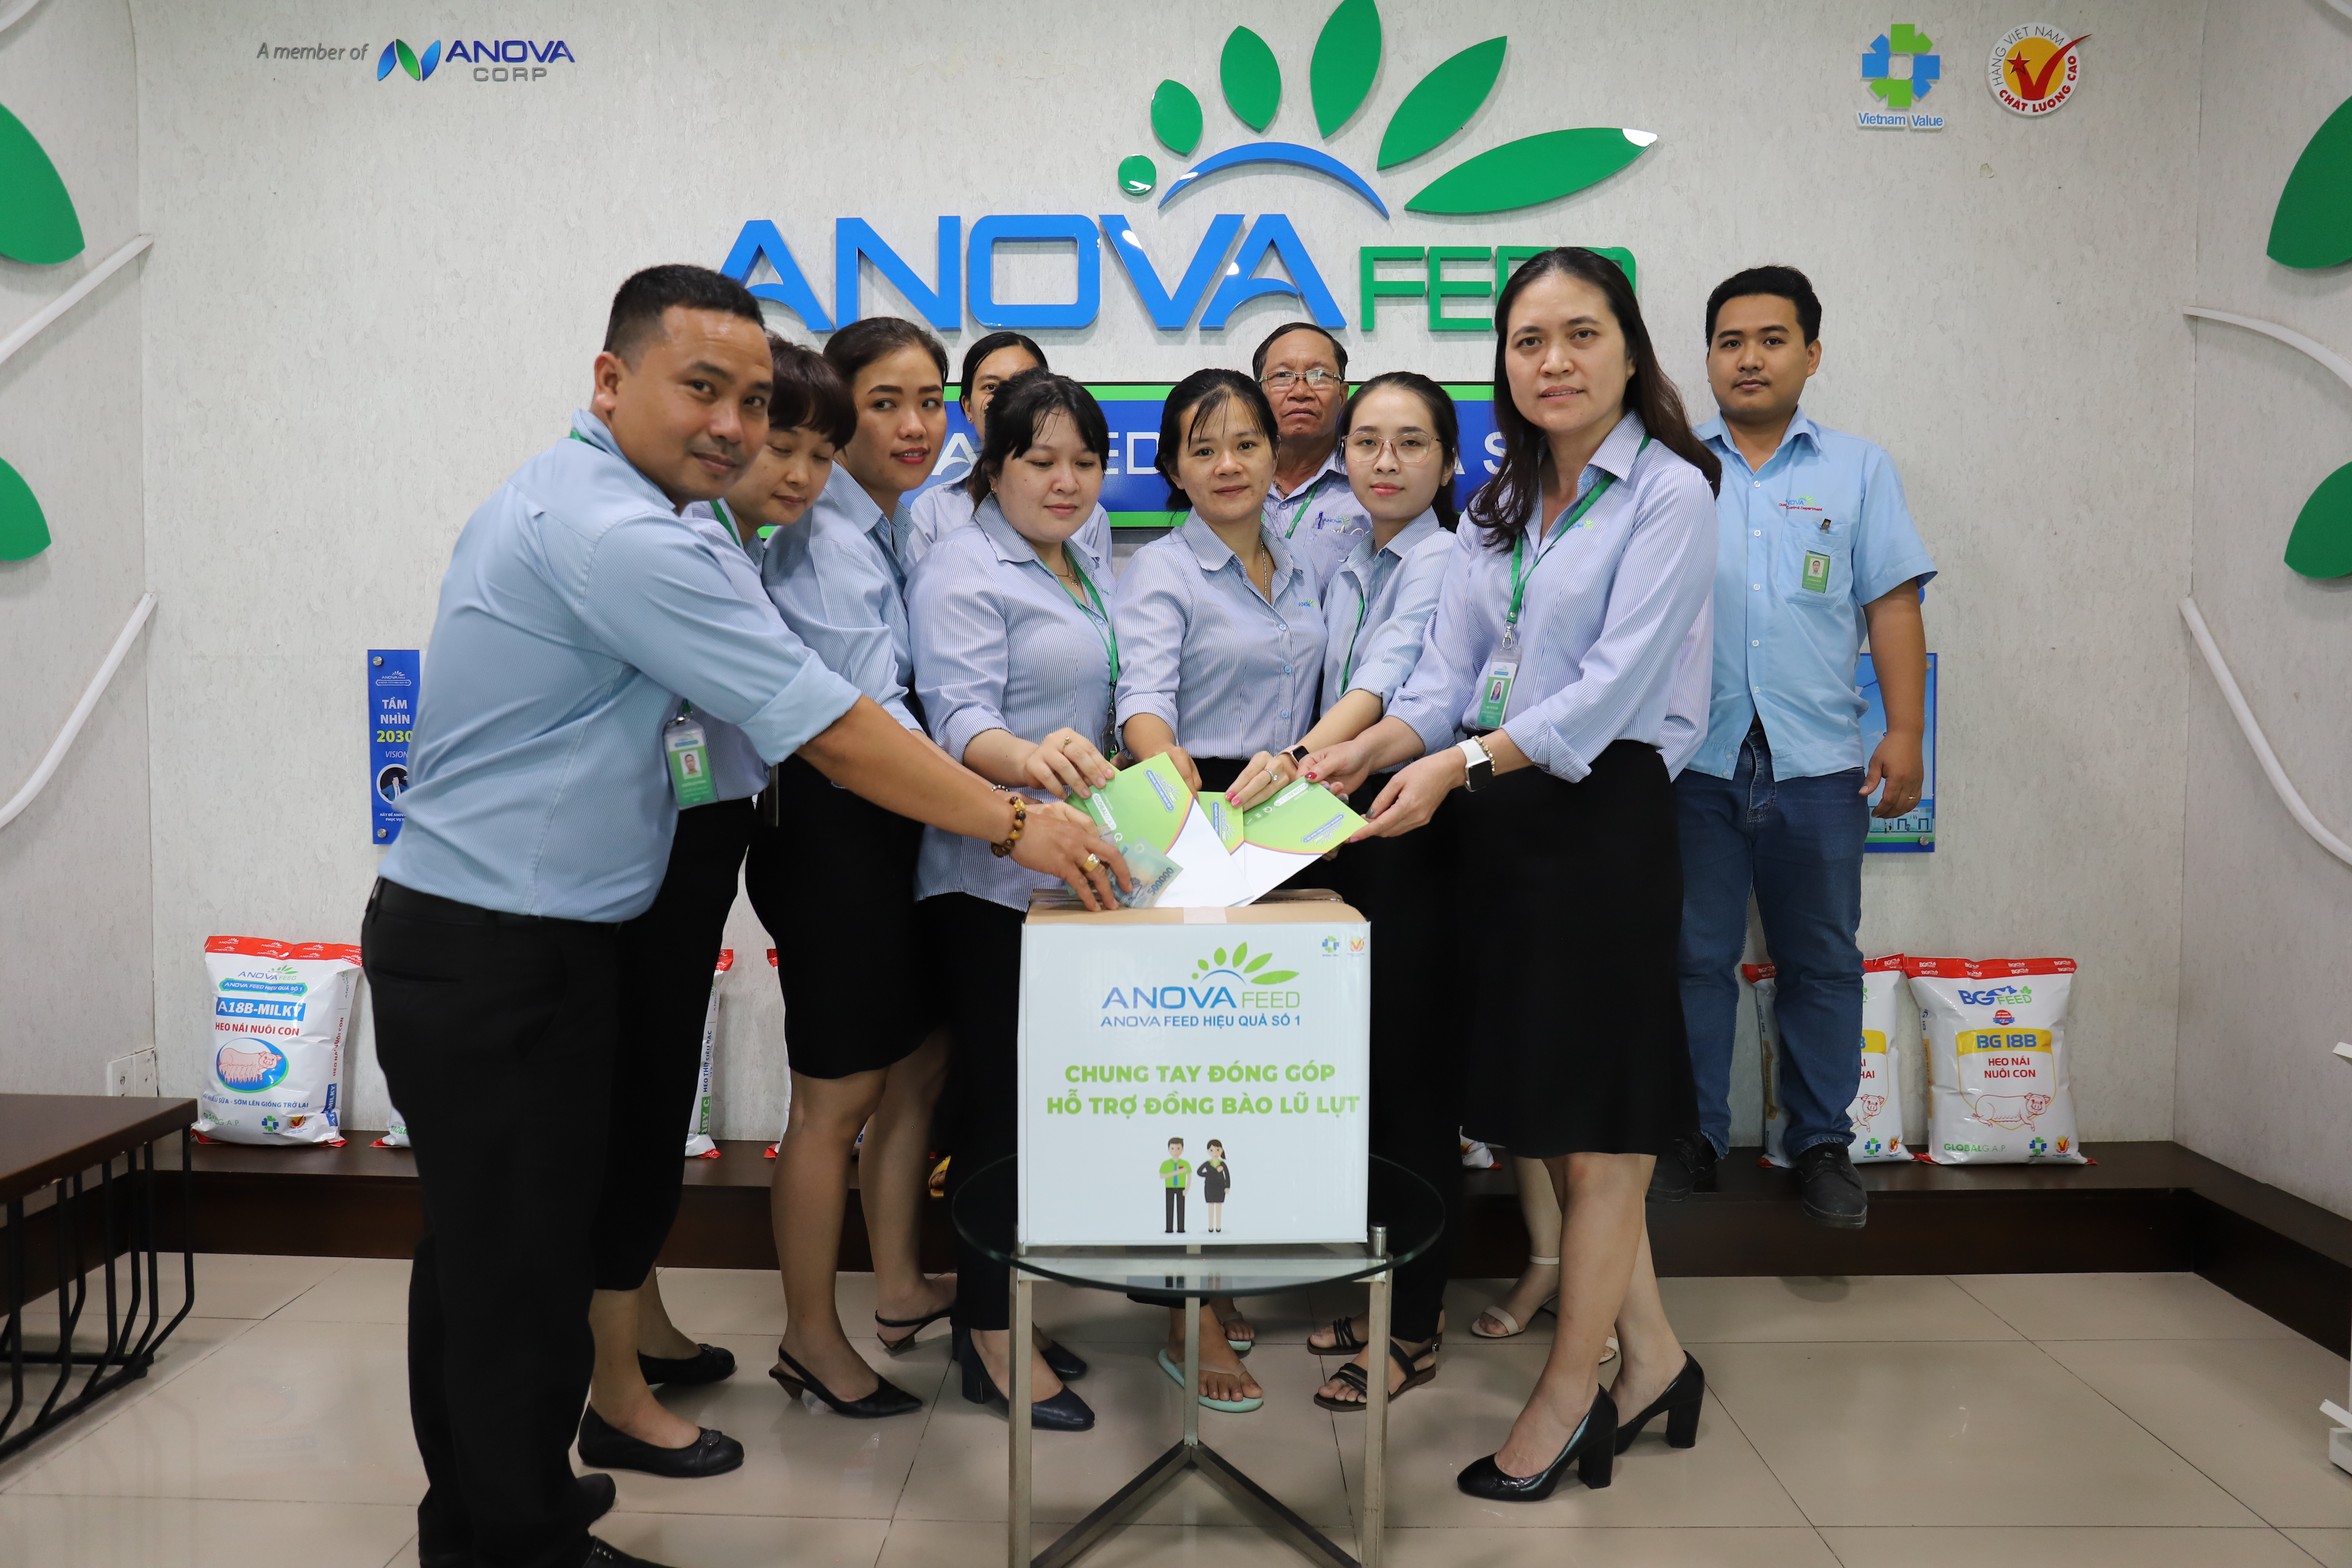 Anova Feed - Chung tay đóng góp hỗ trợ đồng bào miền Trung lũ lụt 2020